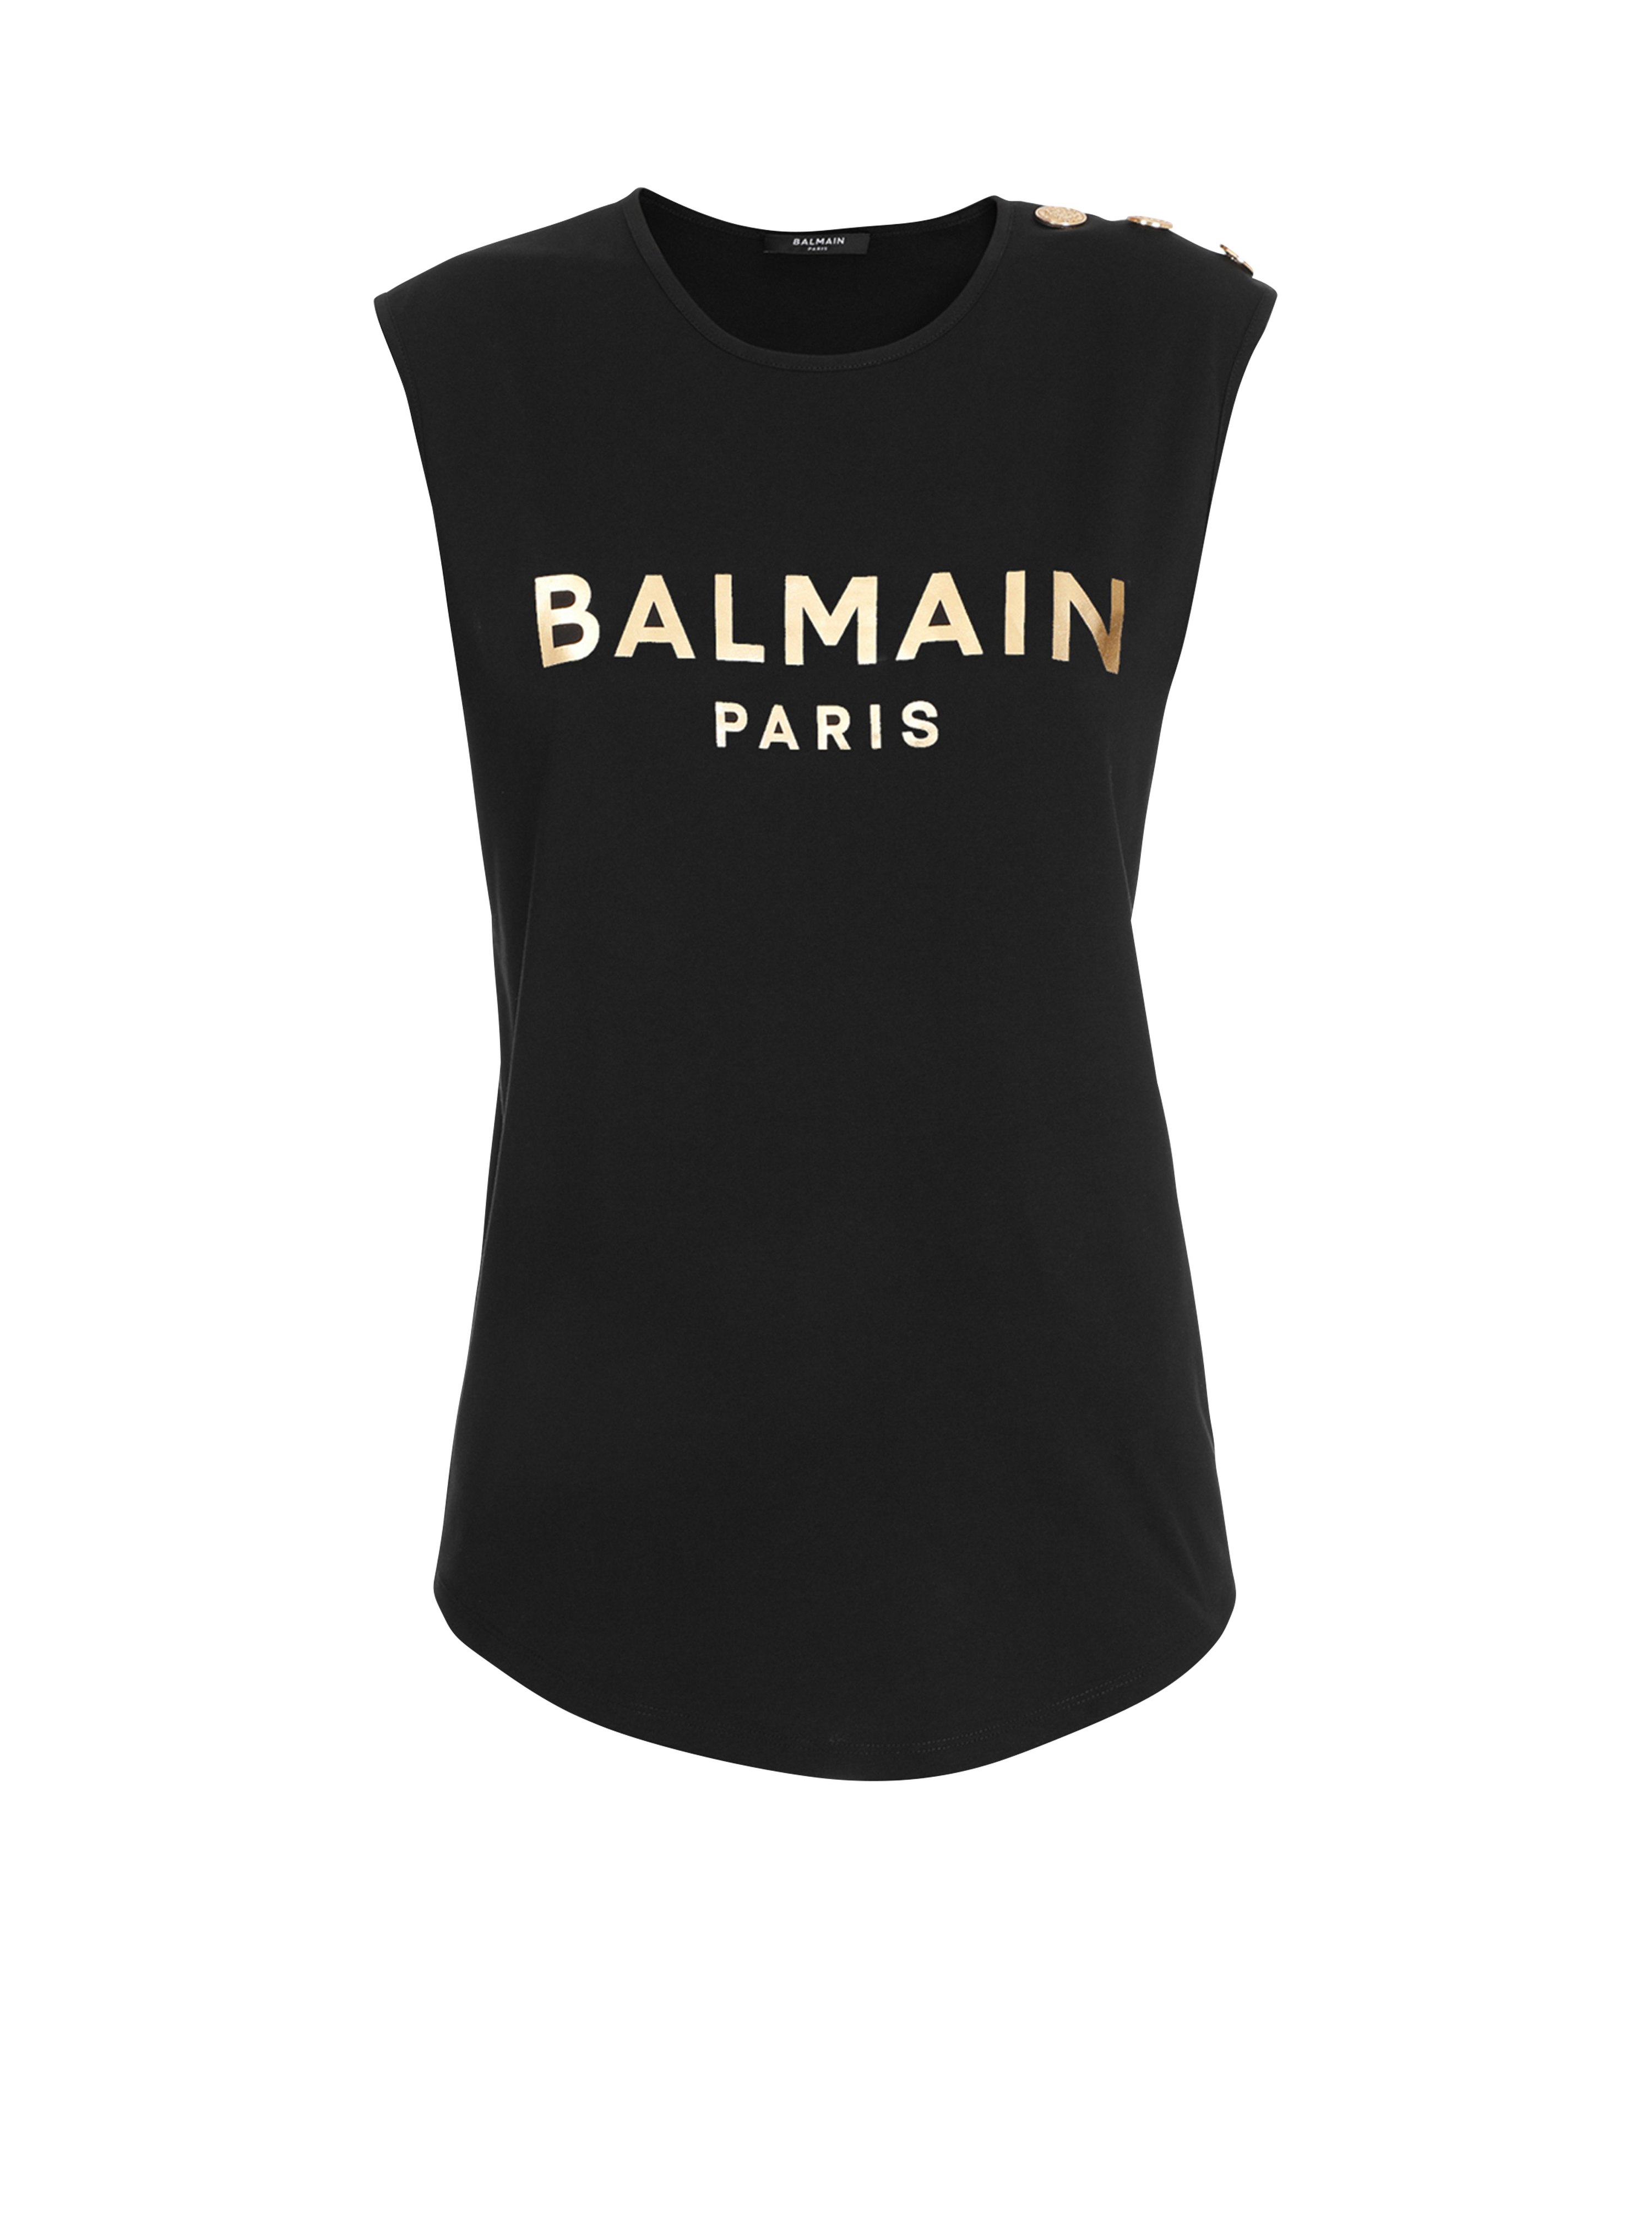 Camiseta de algodón con logotipo de Balmain estampado, dorado